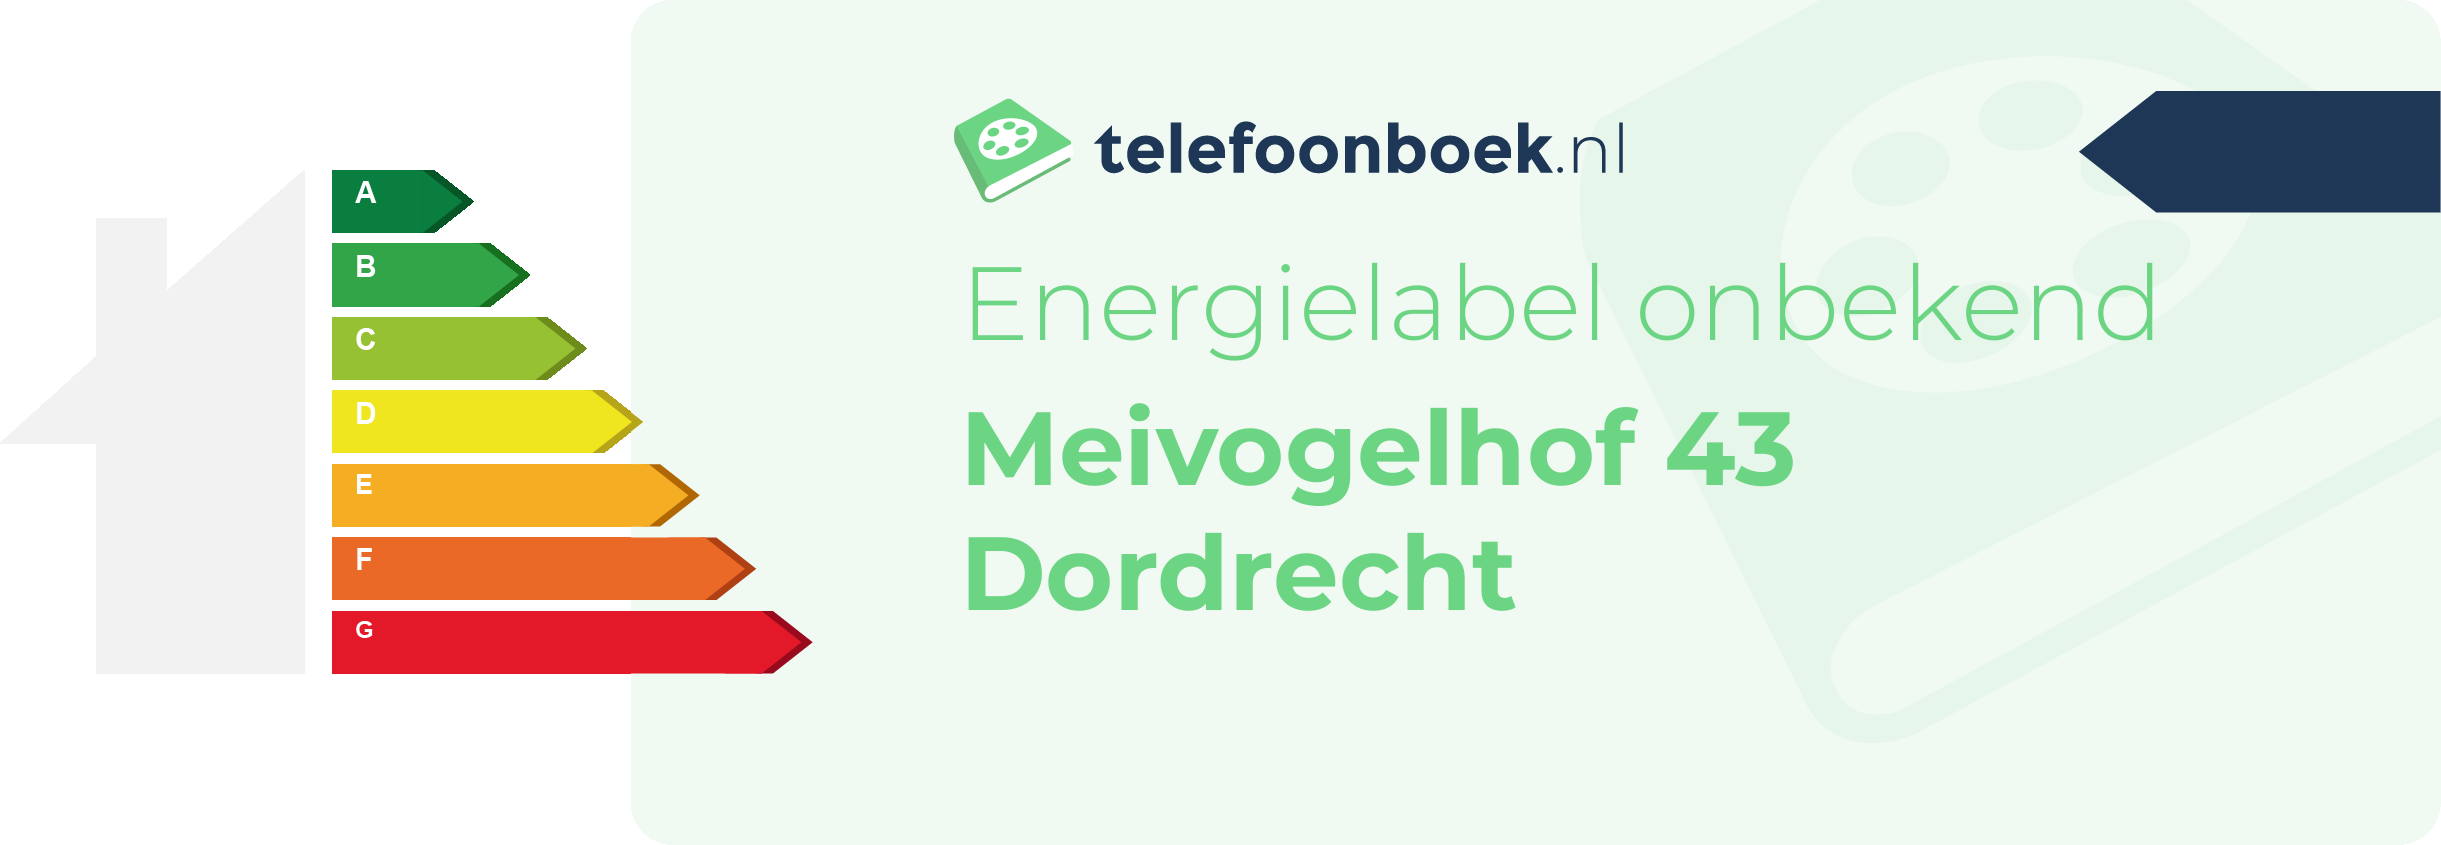 Energielabel Meivogelhof 43 Dordrecht